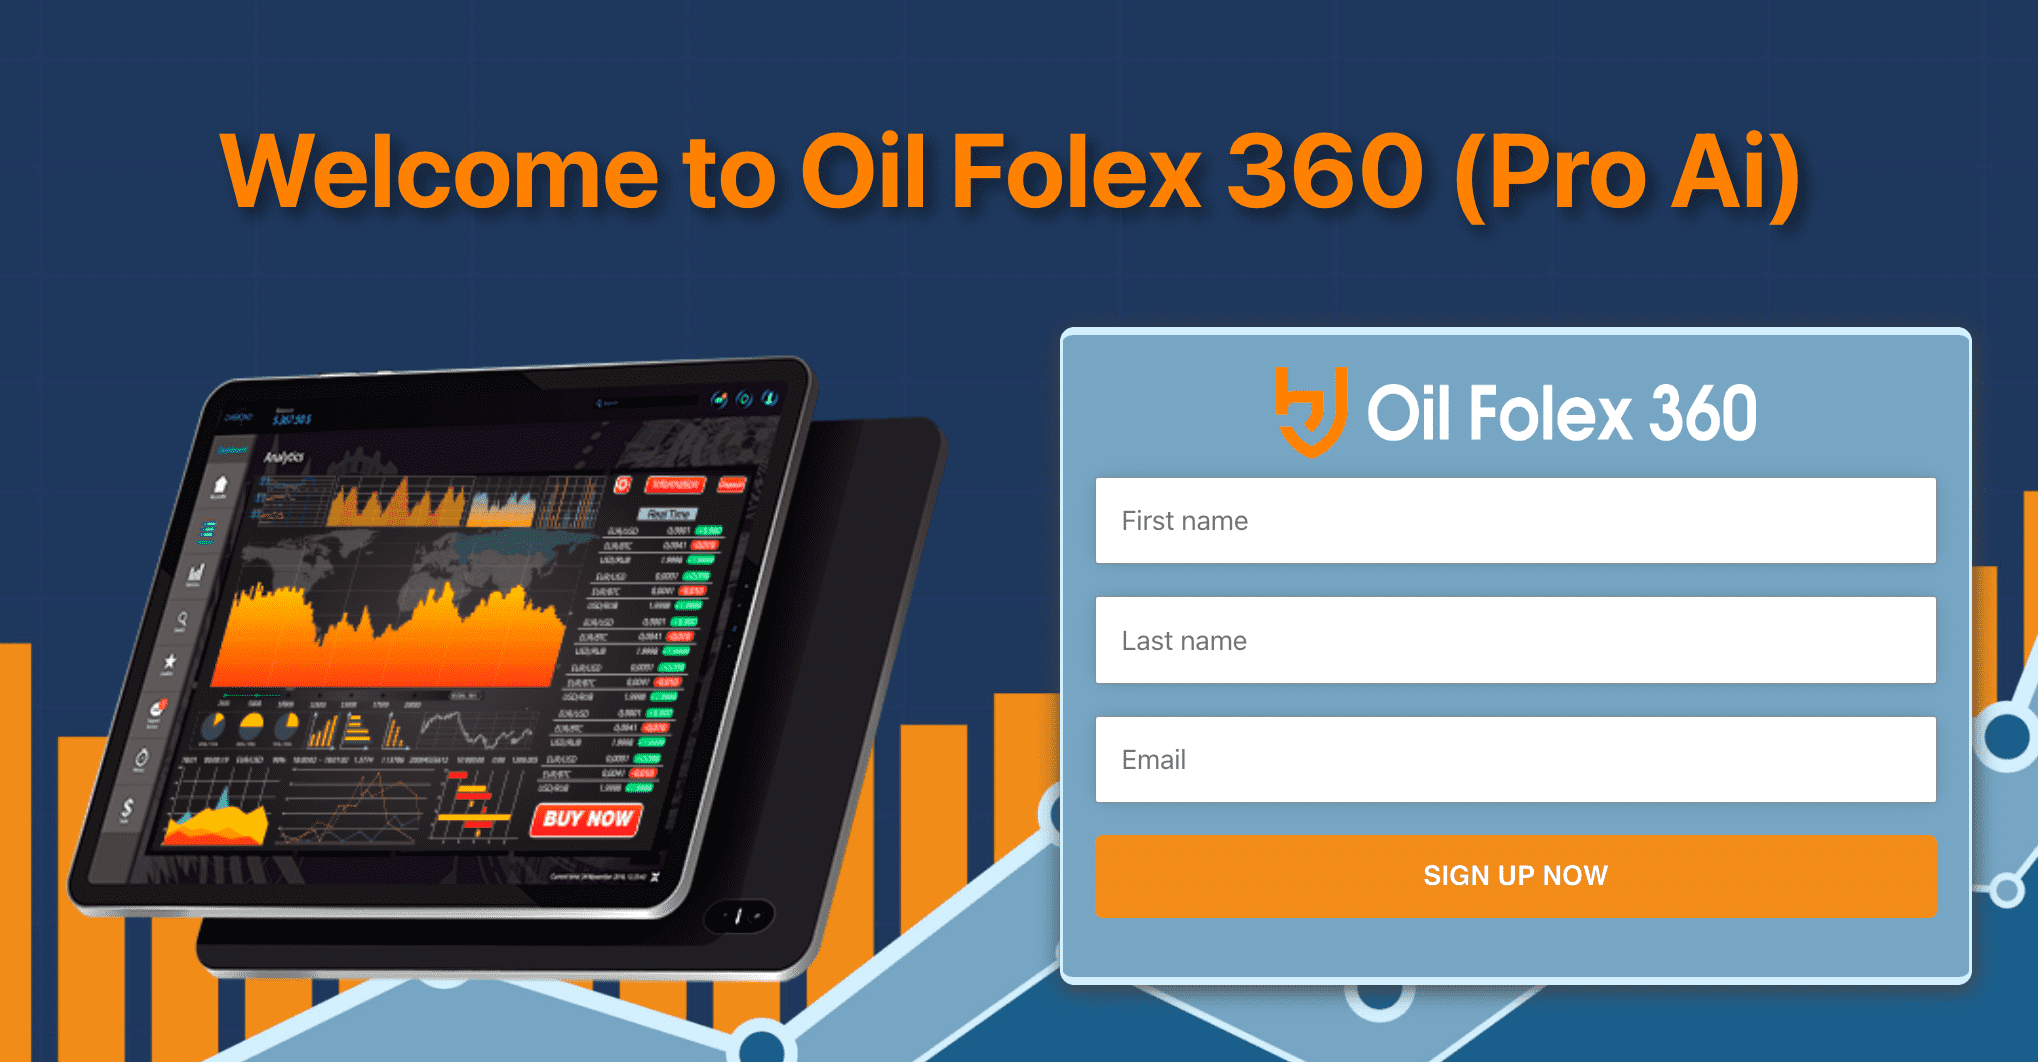 Oil Folex 360